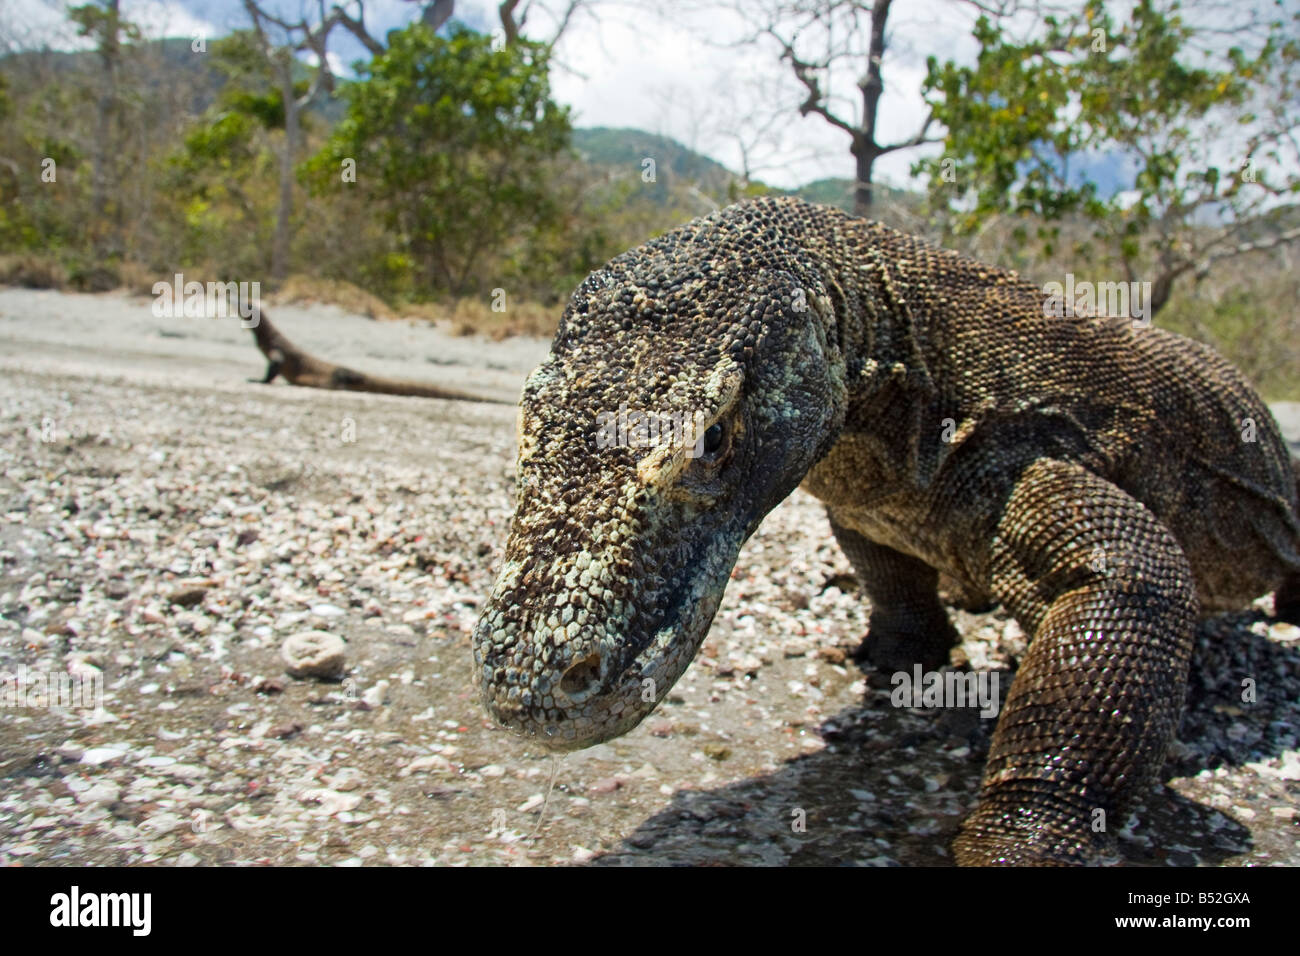 Los dragones de Komodo, Varanus komodoensis, son los reptiles más grandes mundos, la isla Rinca, el Parque Nacional de Komodo (Indonesia). Foto de stock